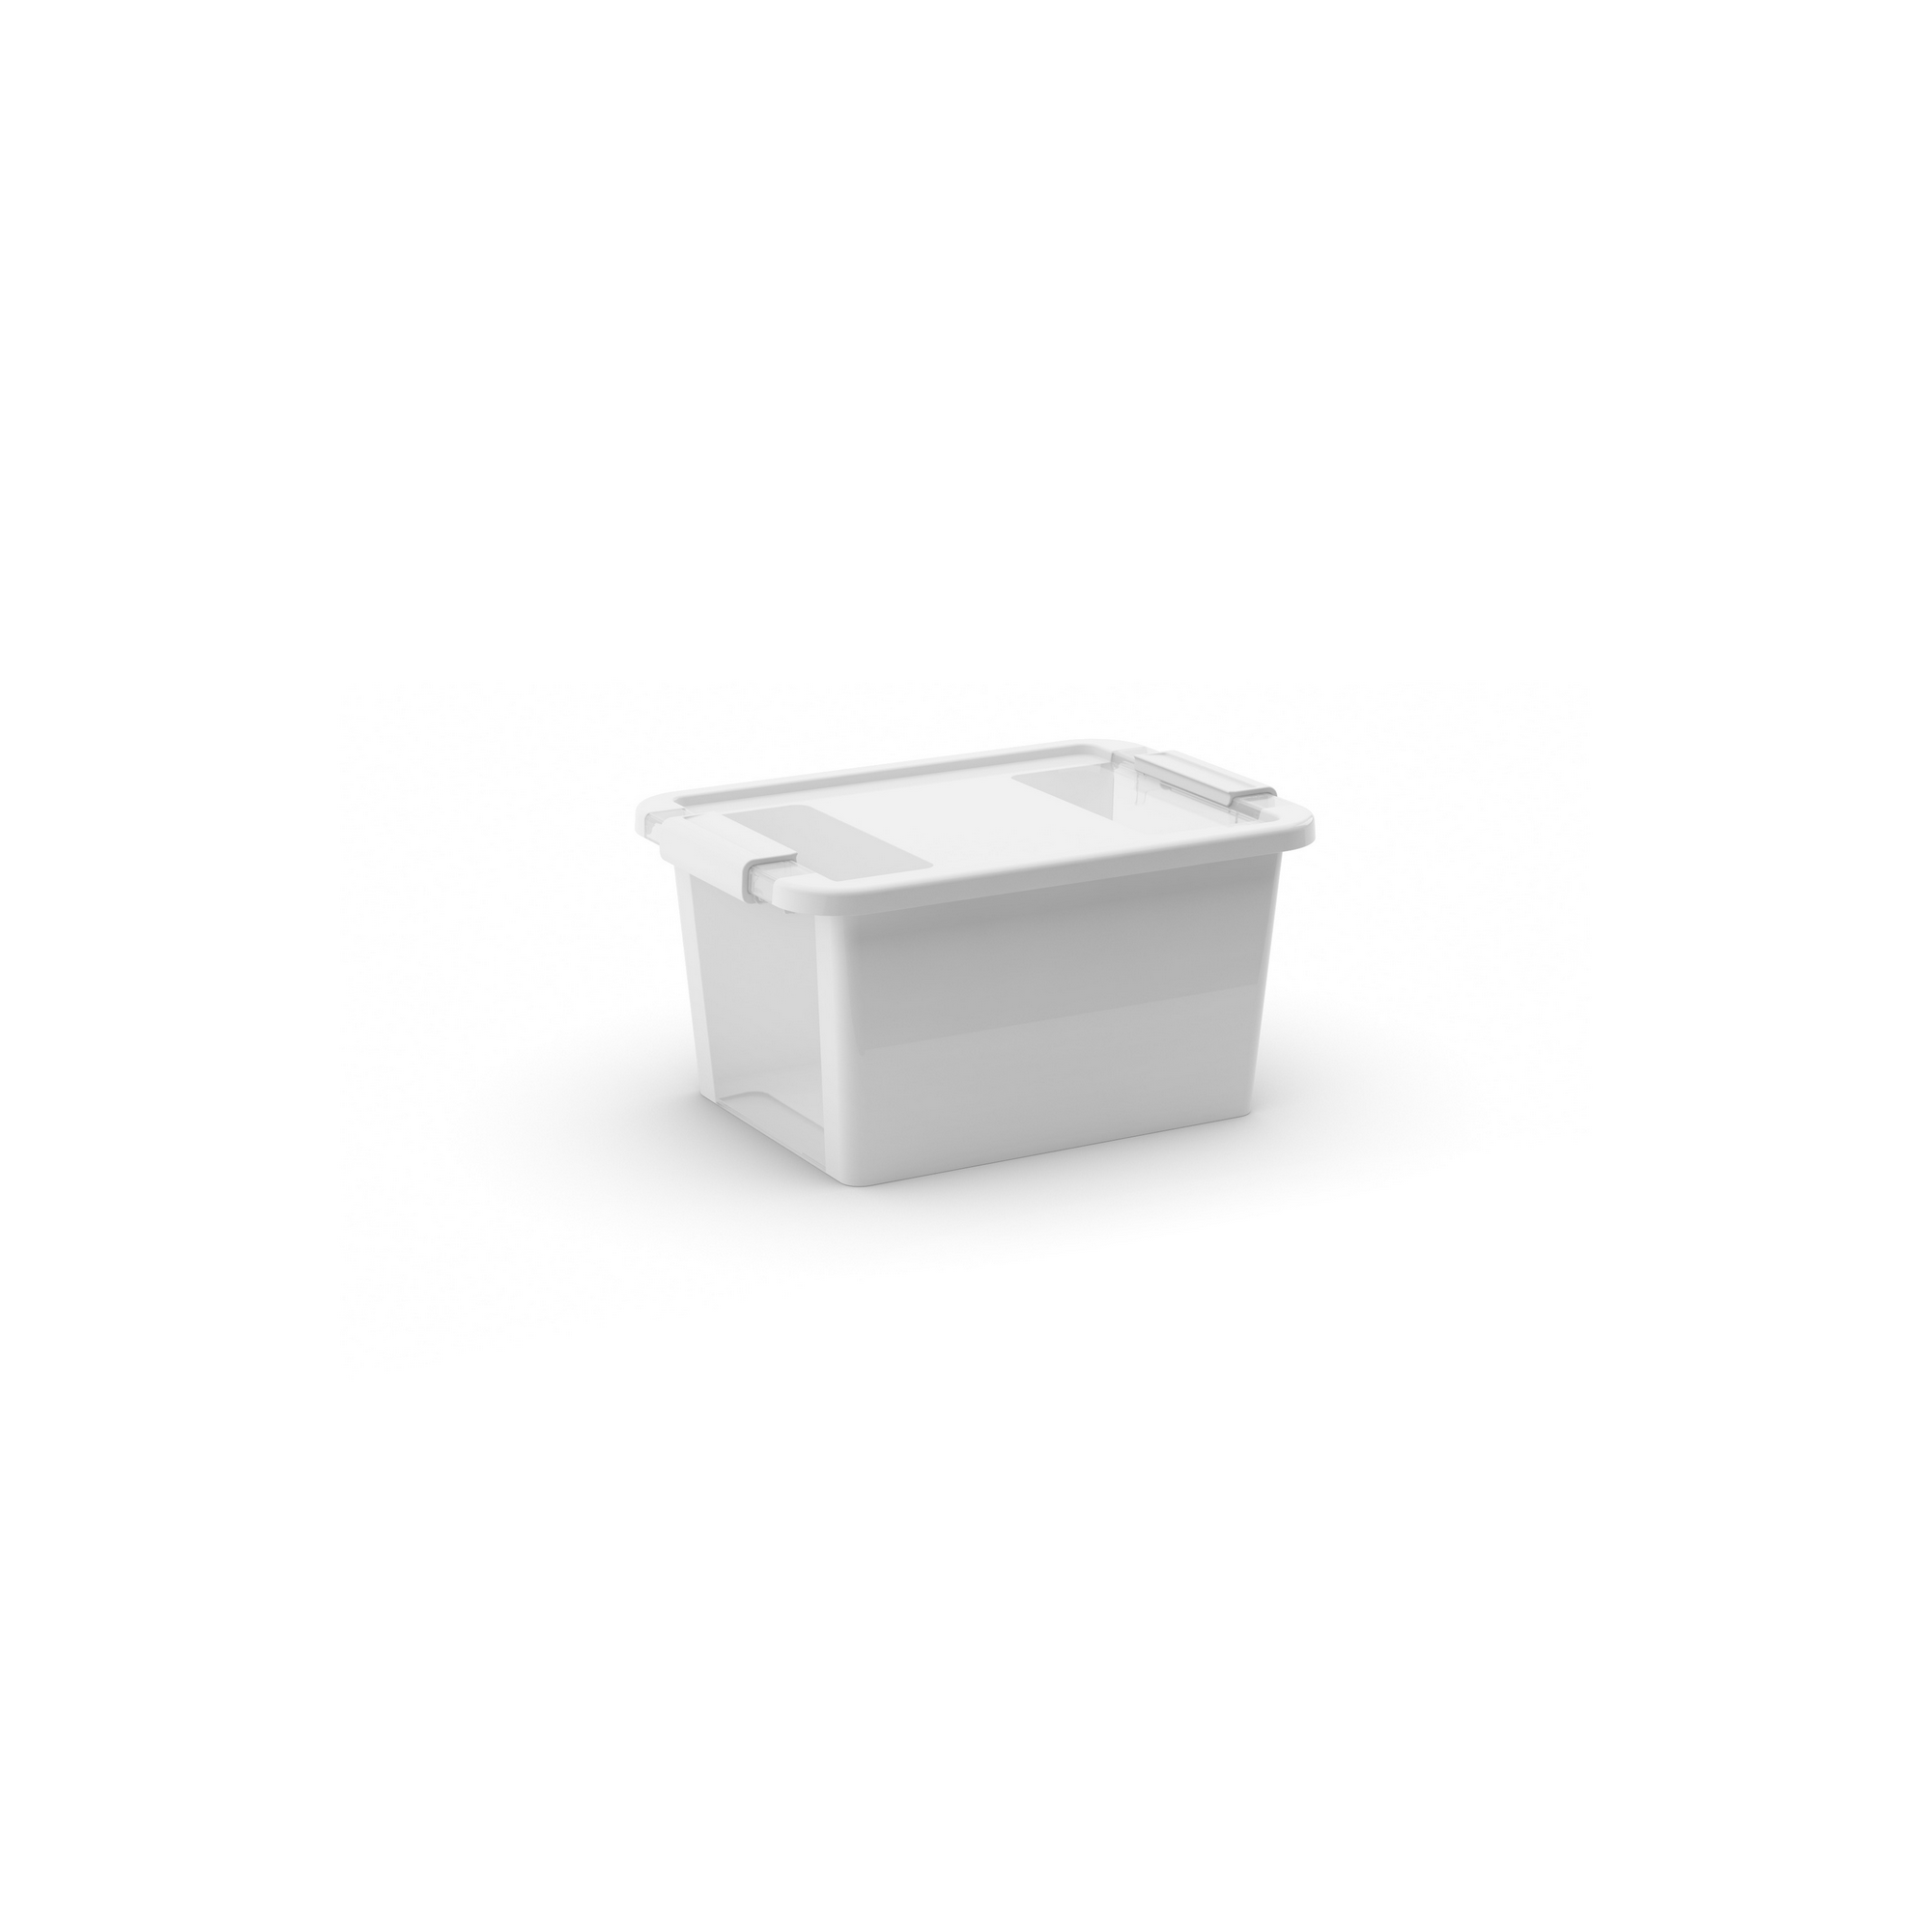 Aufbewahrungsbox 'BI Box S' weiß / transparent 11 l 36,5 x 26 x 19 cm + product picture